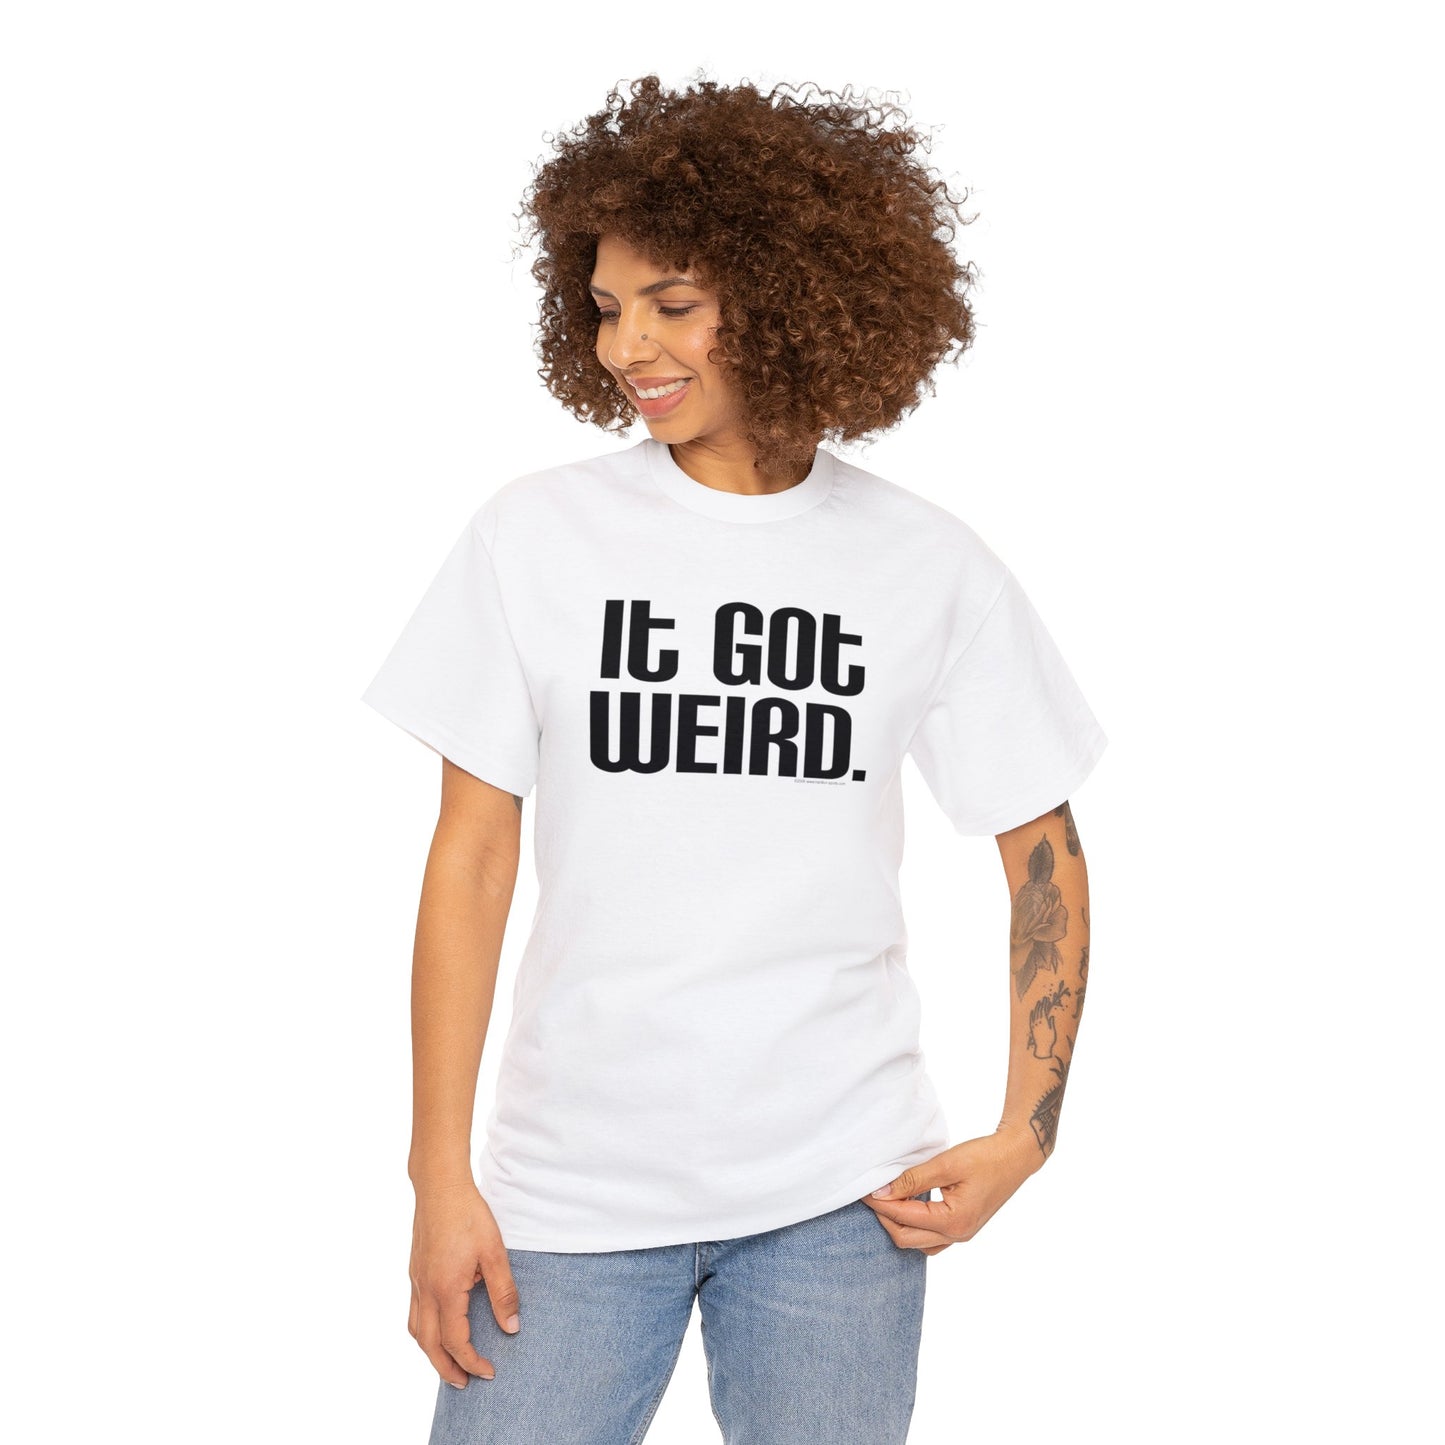 It Got Weird, funny t-shirt, Political Tee, Weird T-Shirt, Keep it Weird, Keep Portland Weird, humorous t-shirt, ironic t-shirt